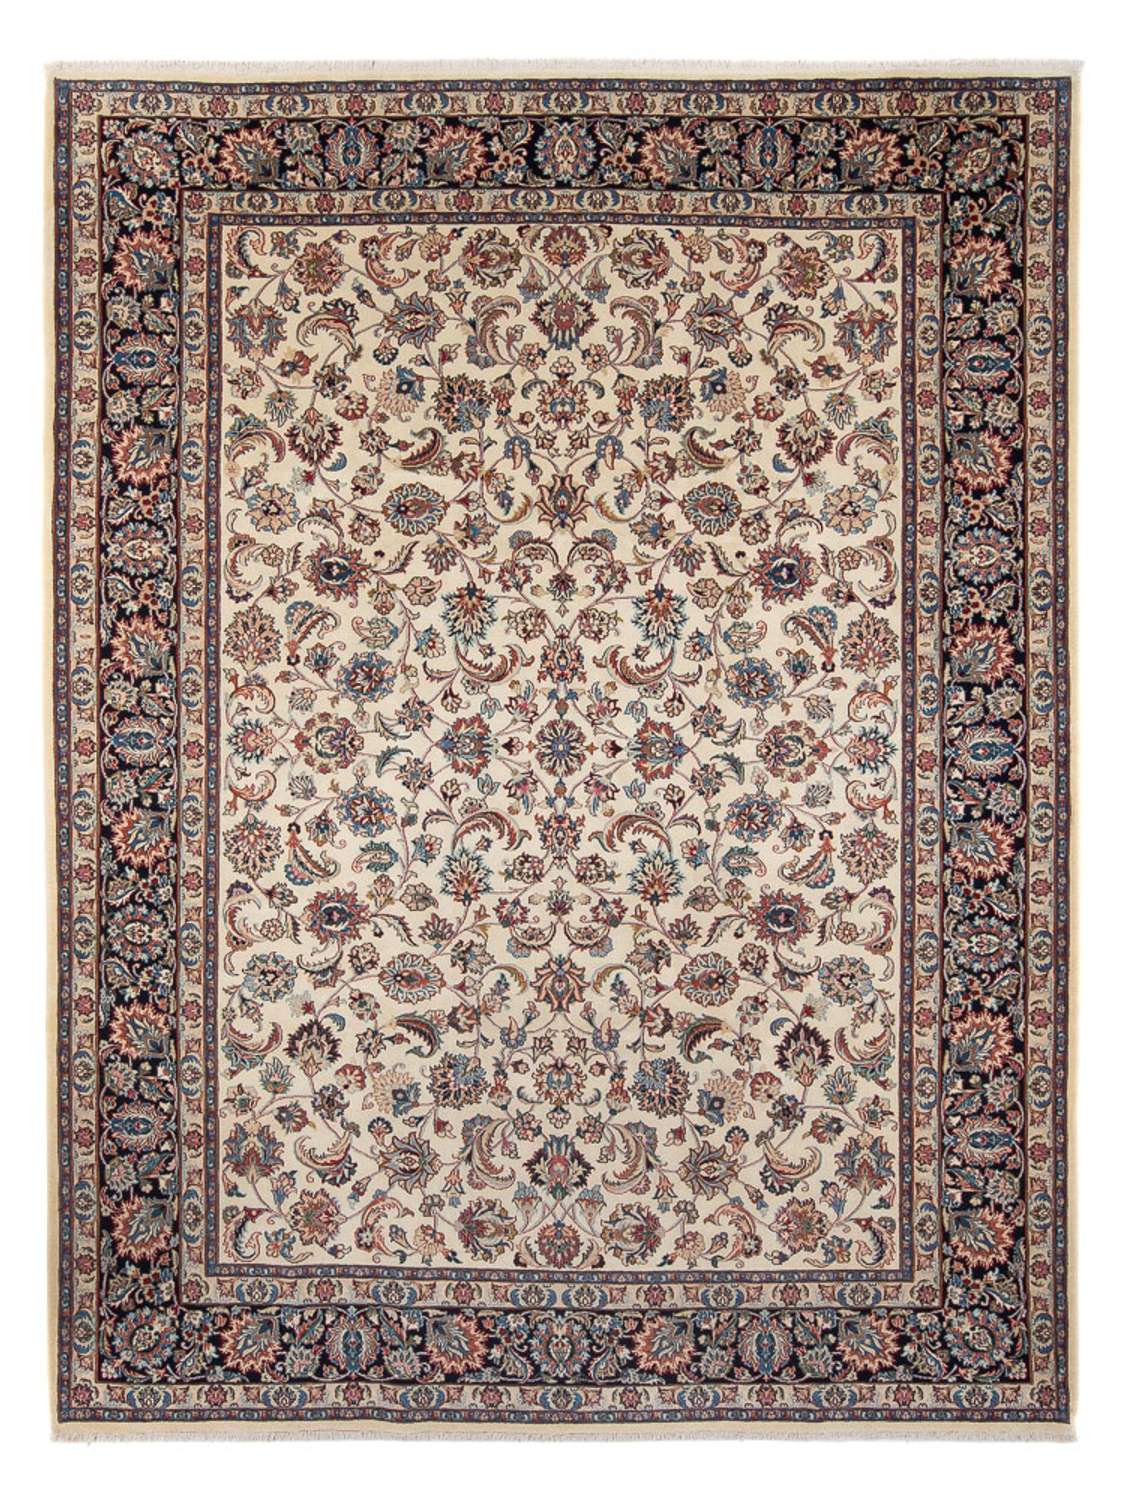 Alfombra persa - Clásica - Real - 340 x 244 cm - crema